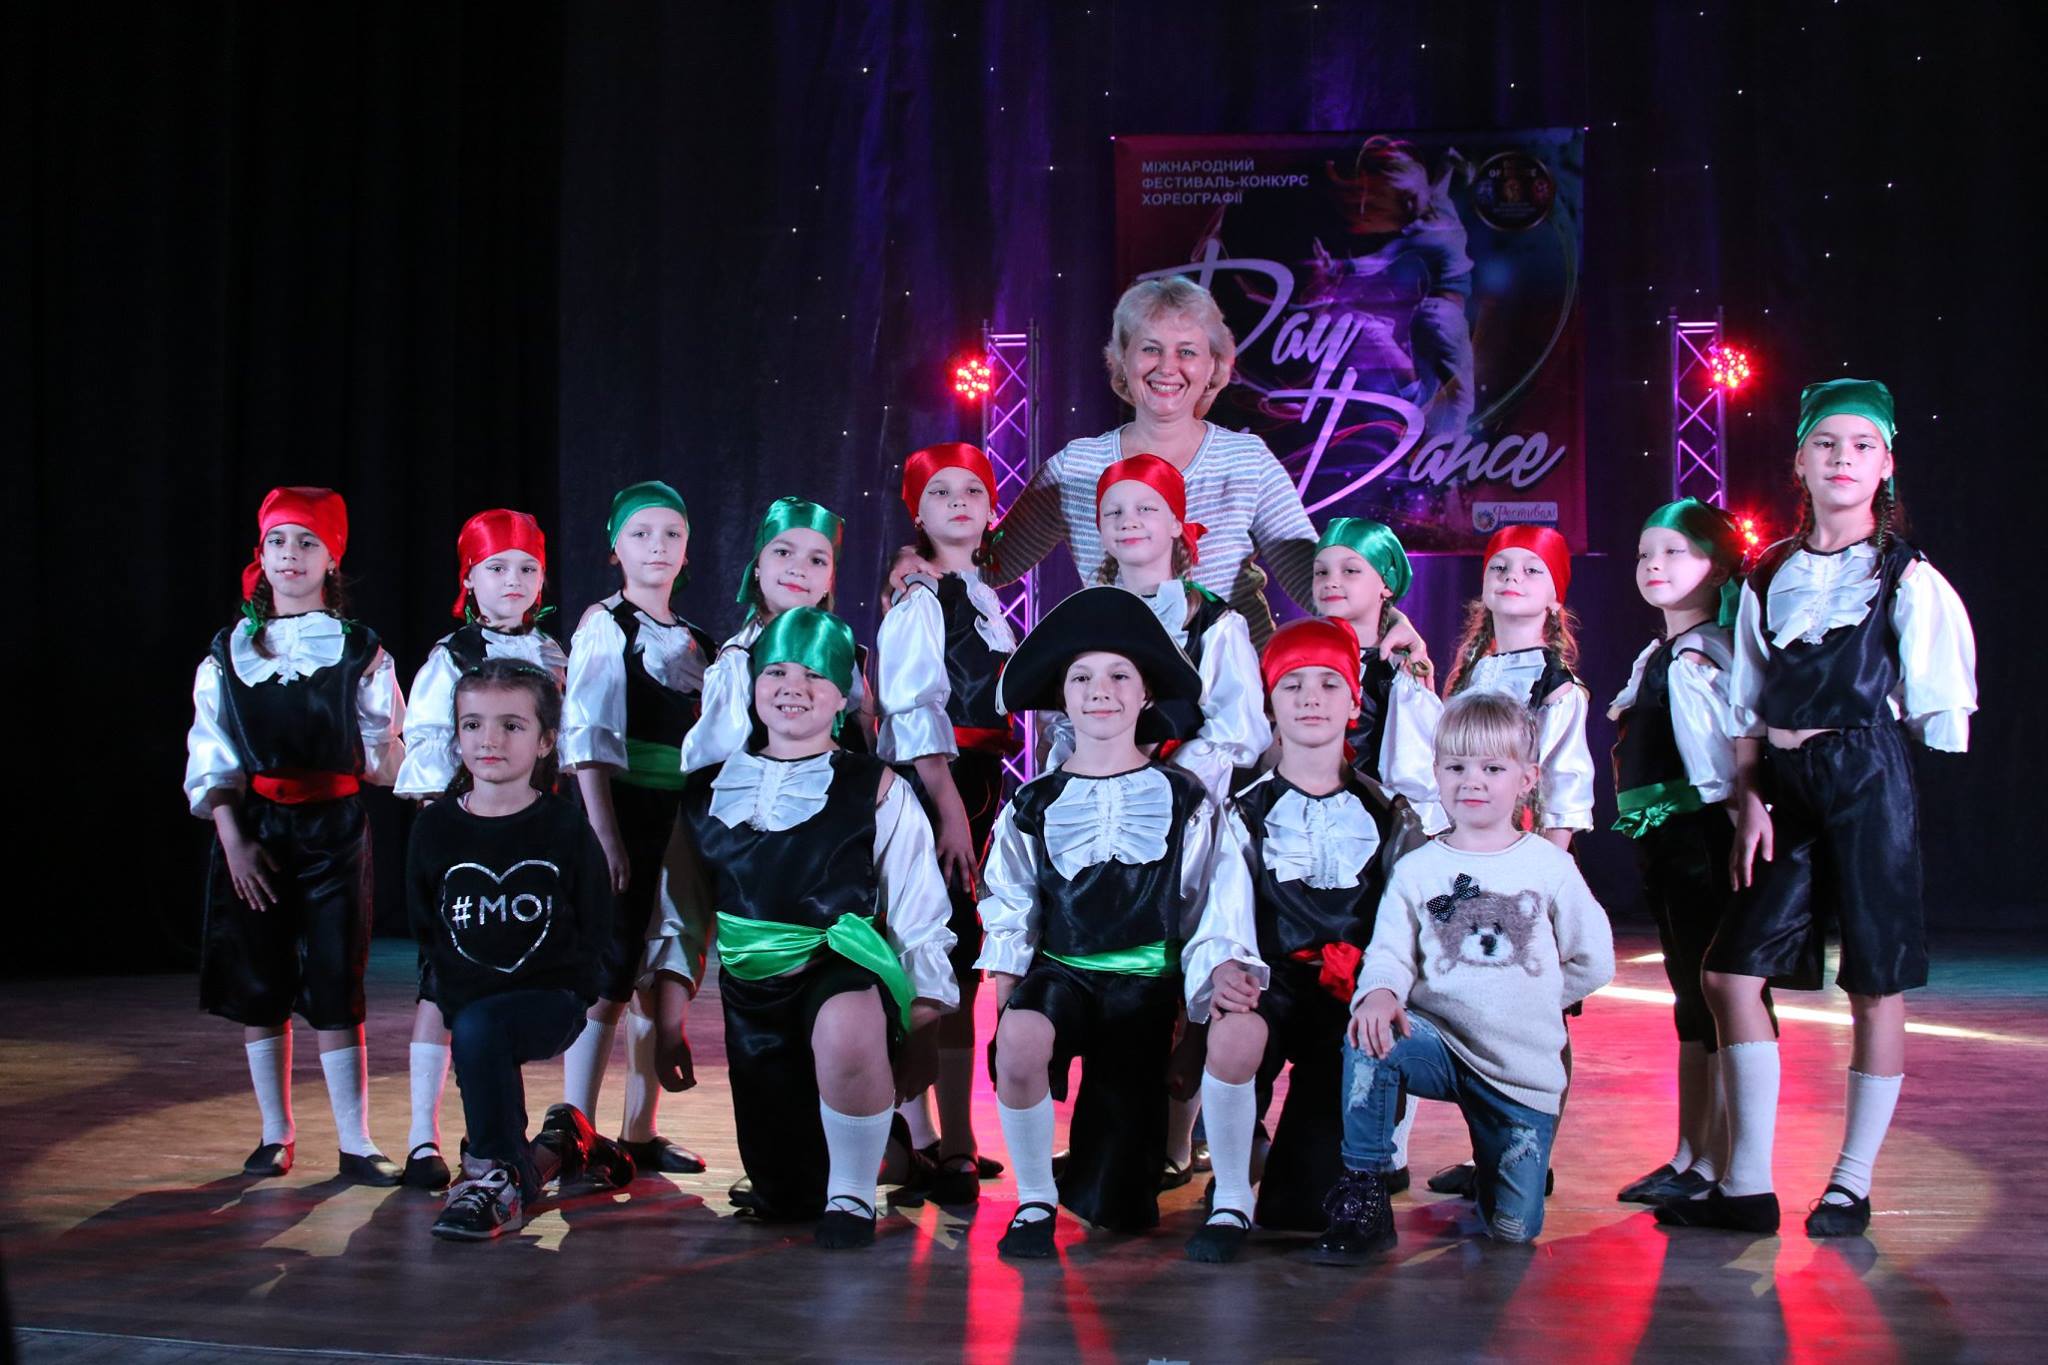 Талановиті діти обласного центру Закарпаття зуміли гідно представити свій край на всеукраїнському міжнародному танцювальному фестивалі-конкурсі «Day Of Dance 2016», що проходив 20-22 жовтня у Львові.